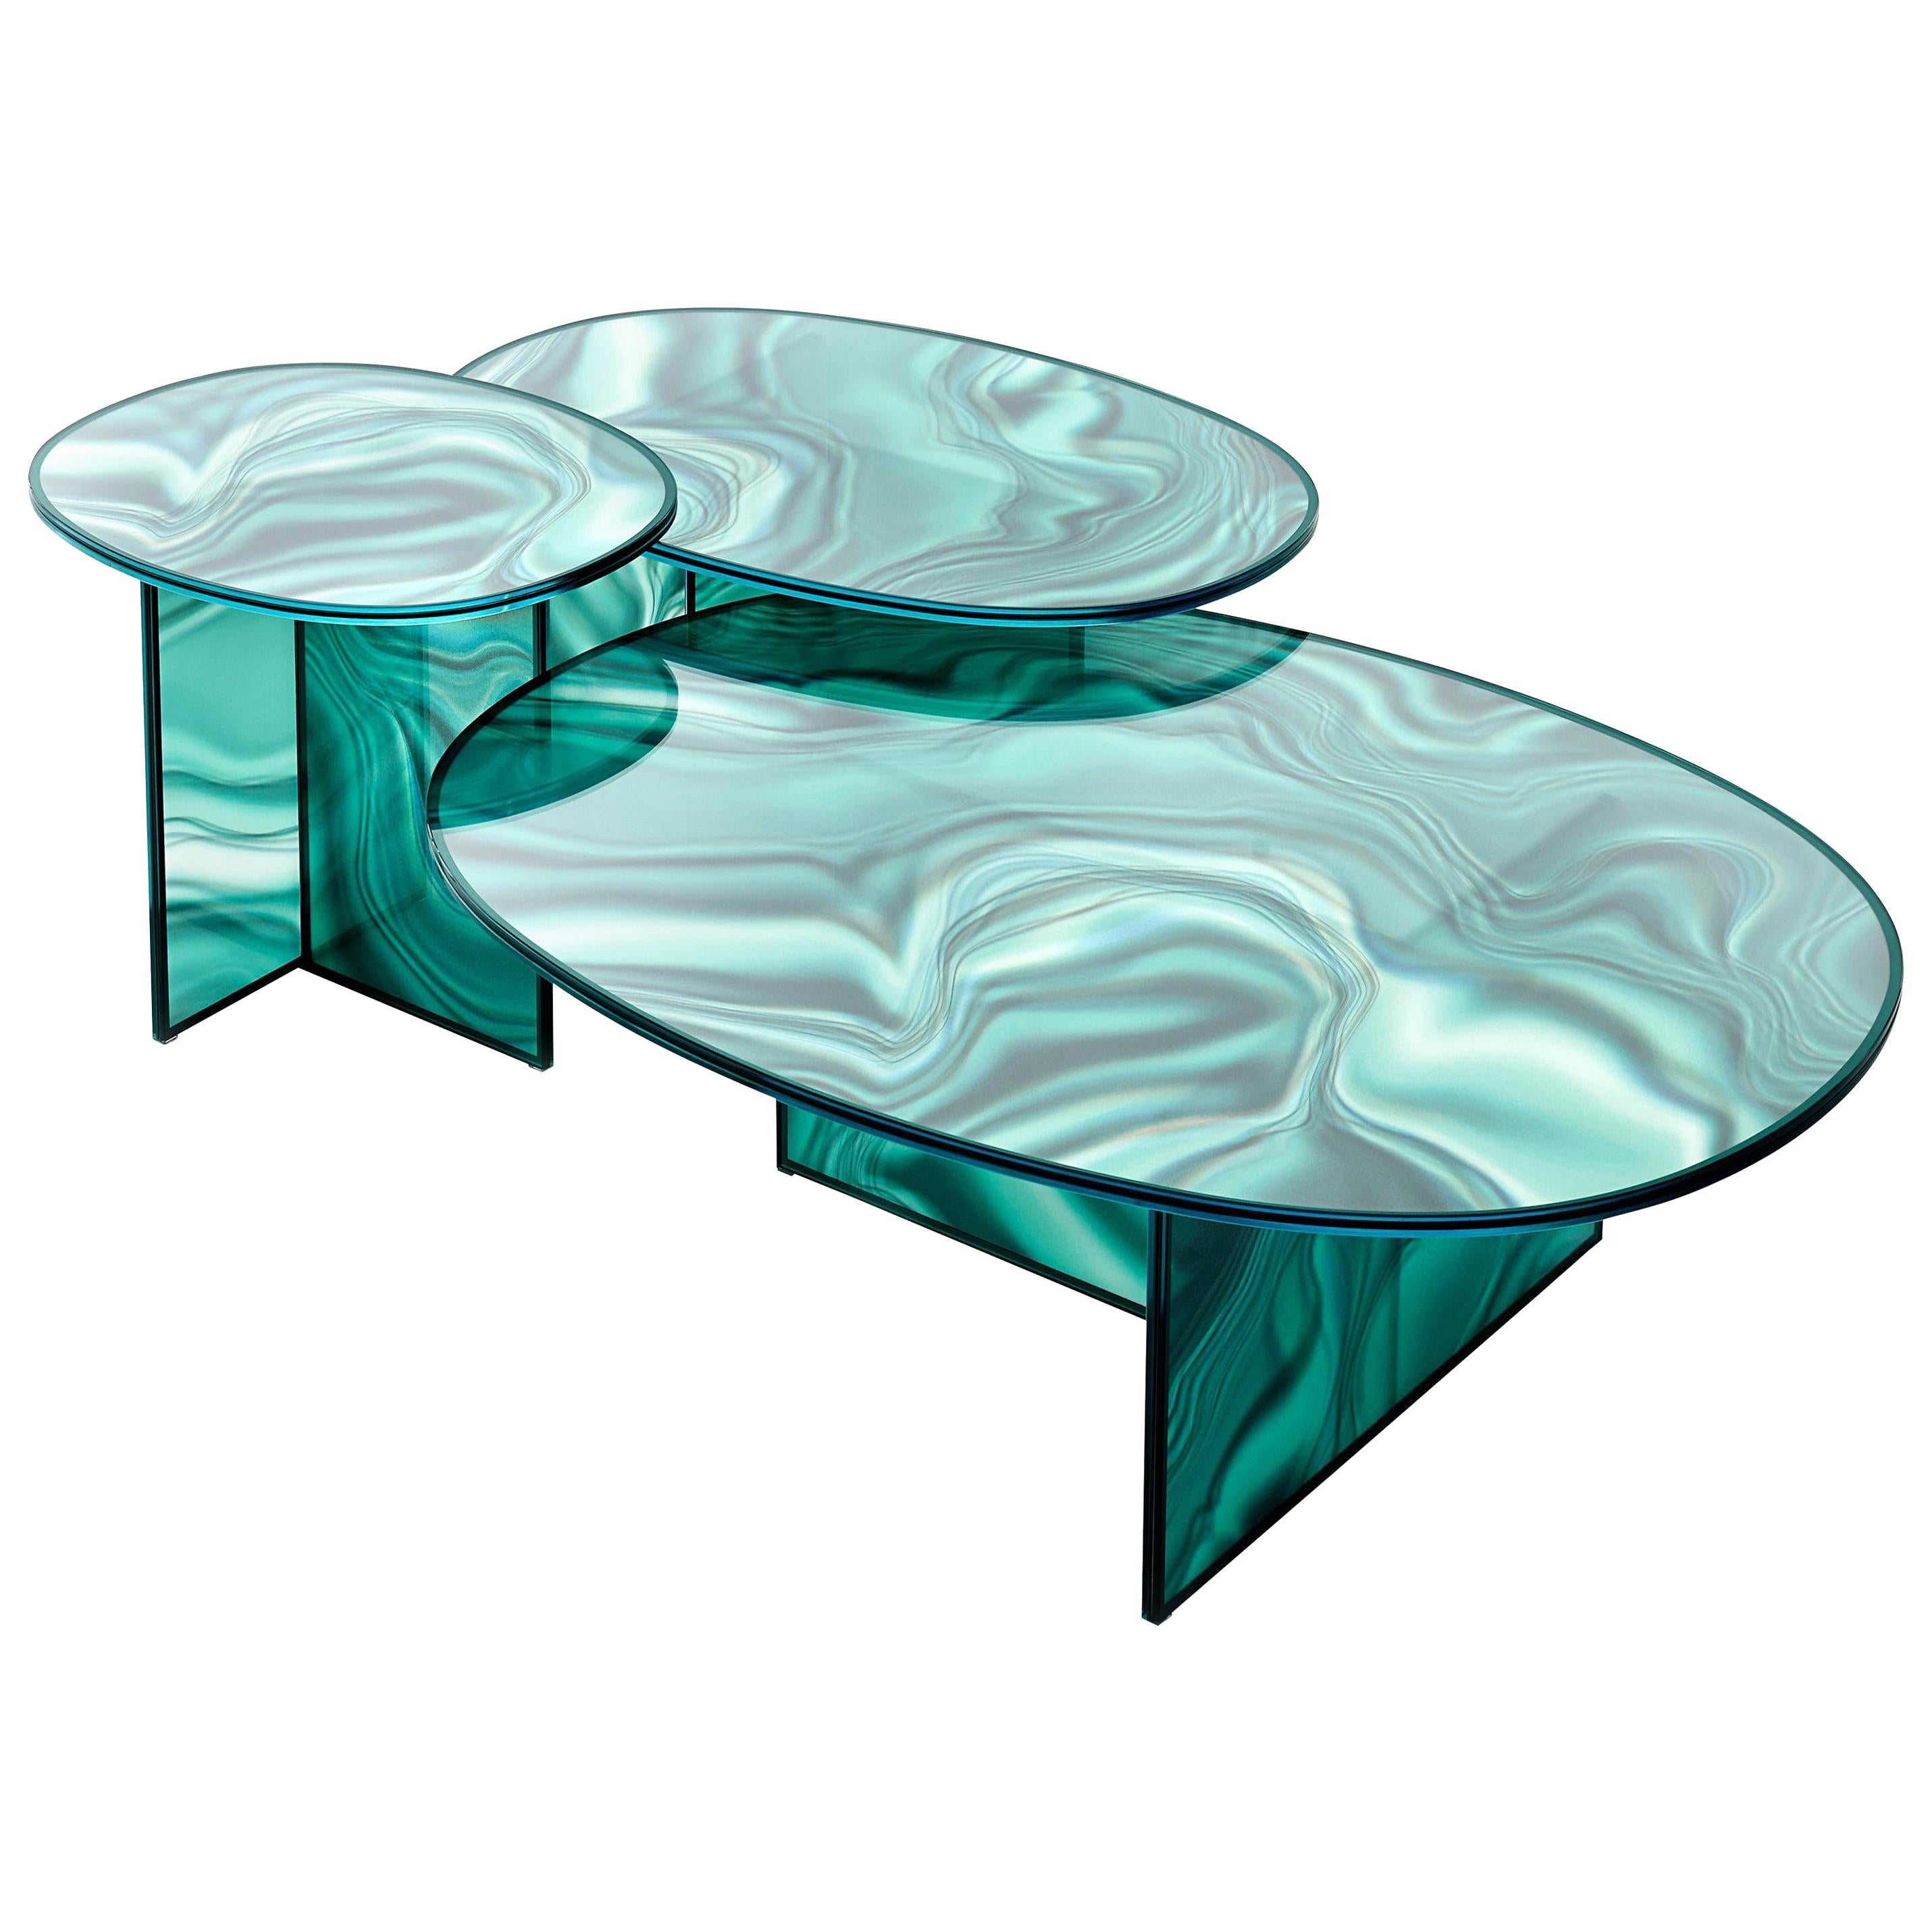 Tables hautes et basses de forme ovale en verre trempé extra léger, avec un décor délavé et irrégulier qui reprend la couleur et les veines du marbre.
L'effet surprenant de changement d'image donne au veinage un aspect dynamique et variable selon